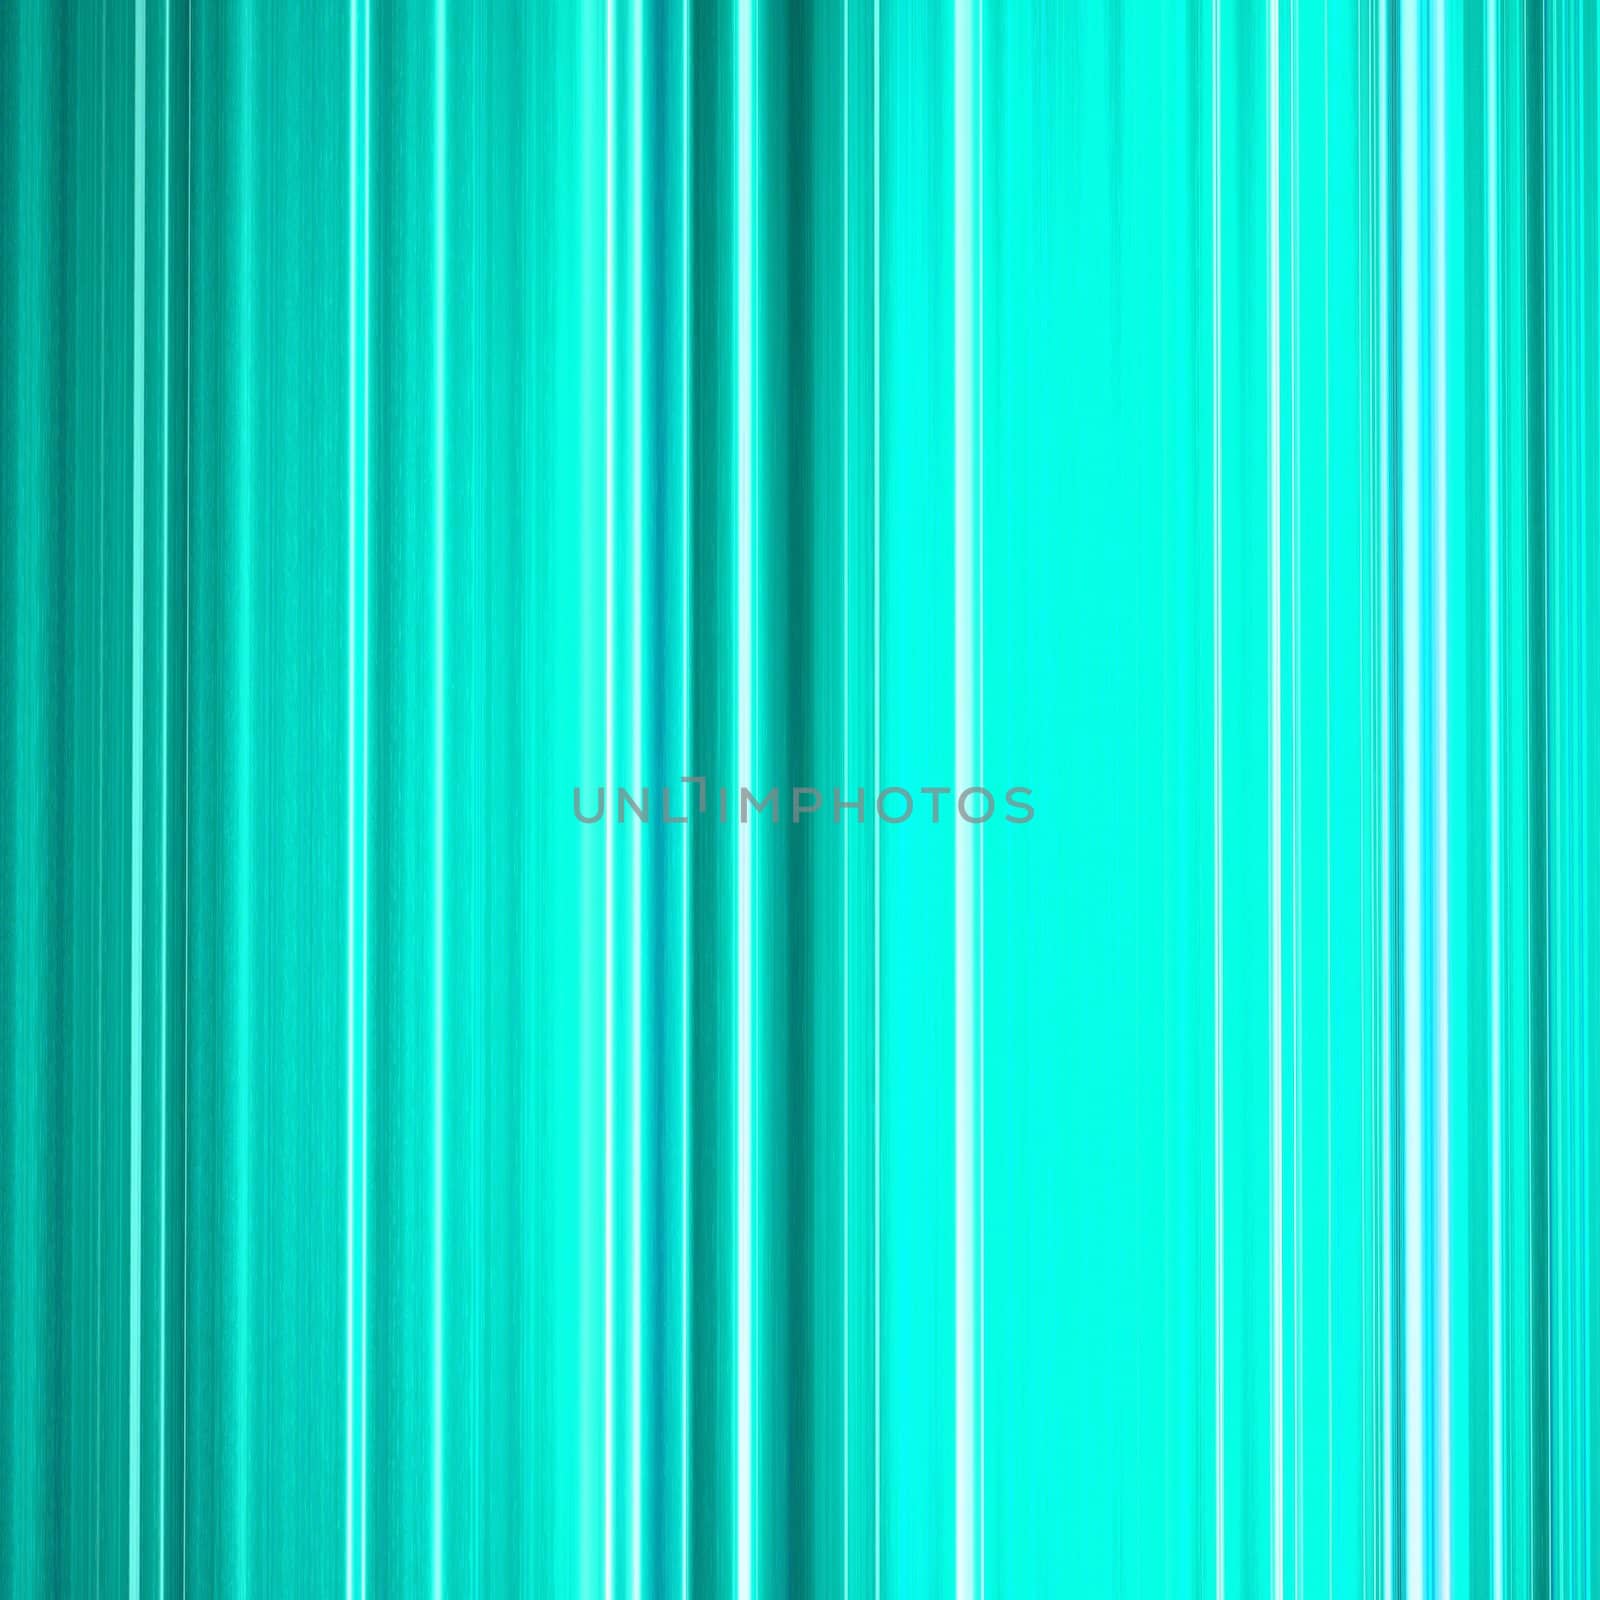 A background illustration of light blue vertical lines.